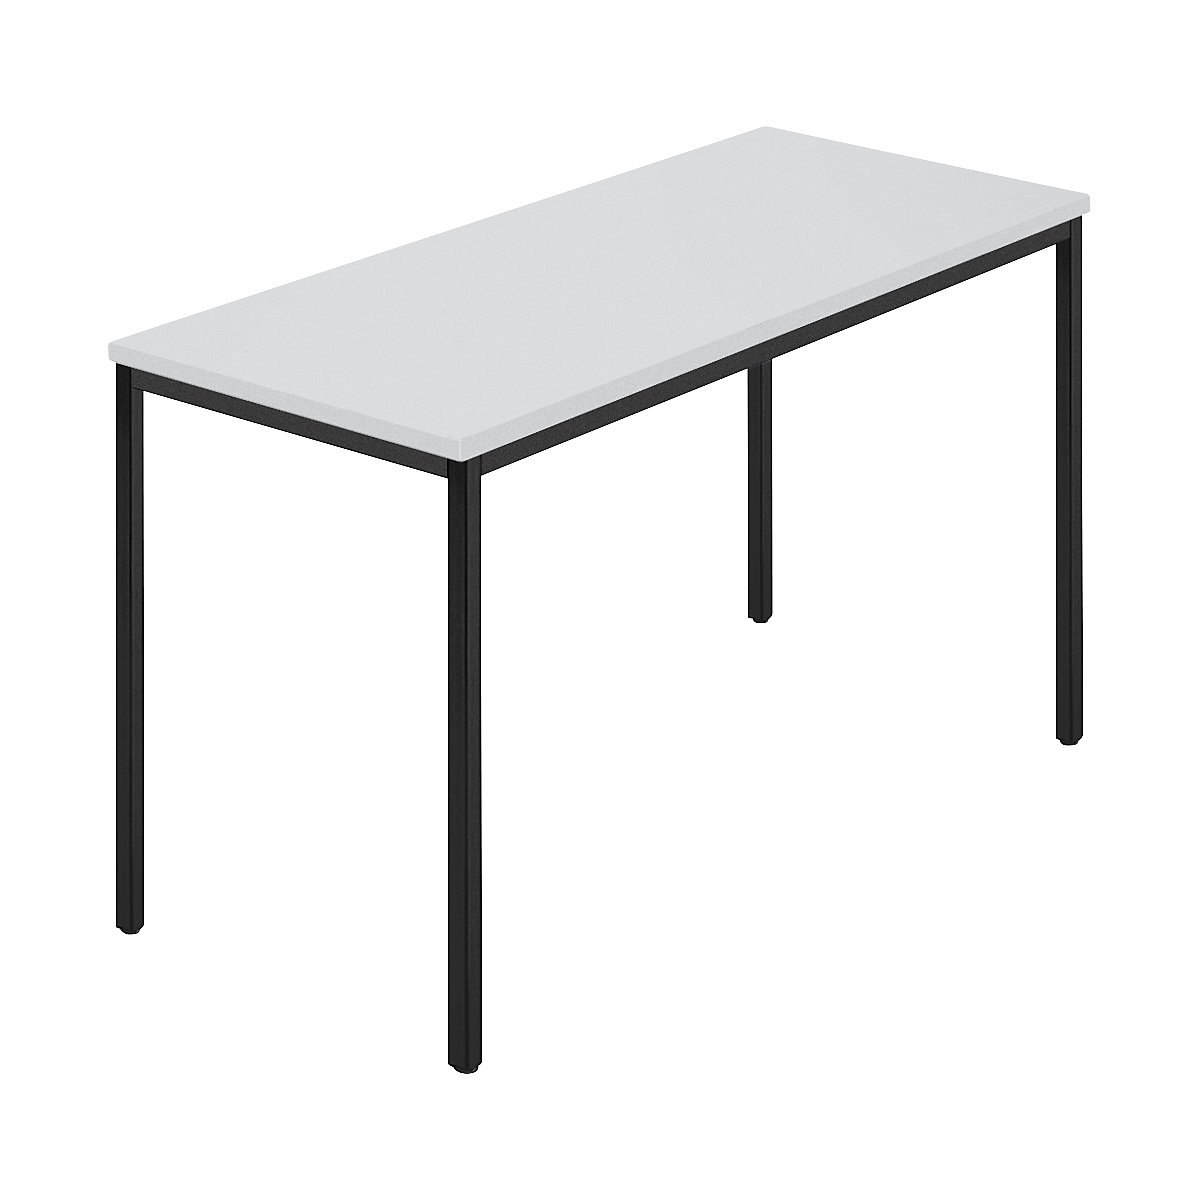 Table rectangulaire, tube carré plastifié, l x p 1200 x 600 mm, gris / anthracite-7